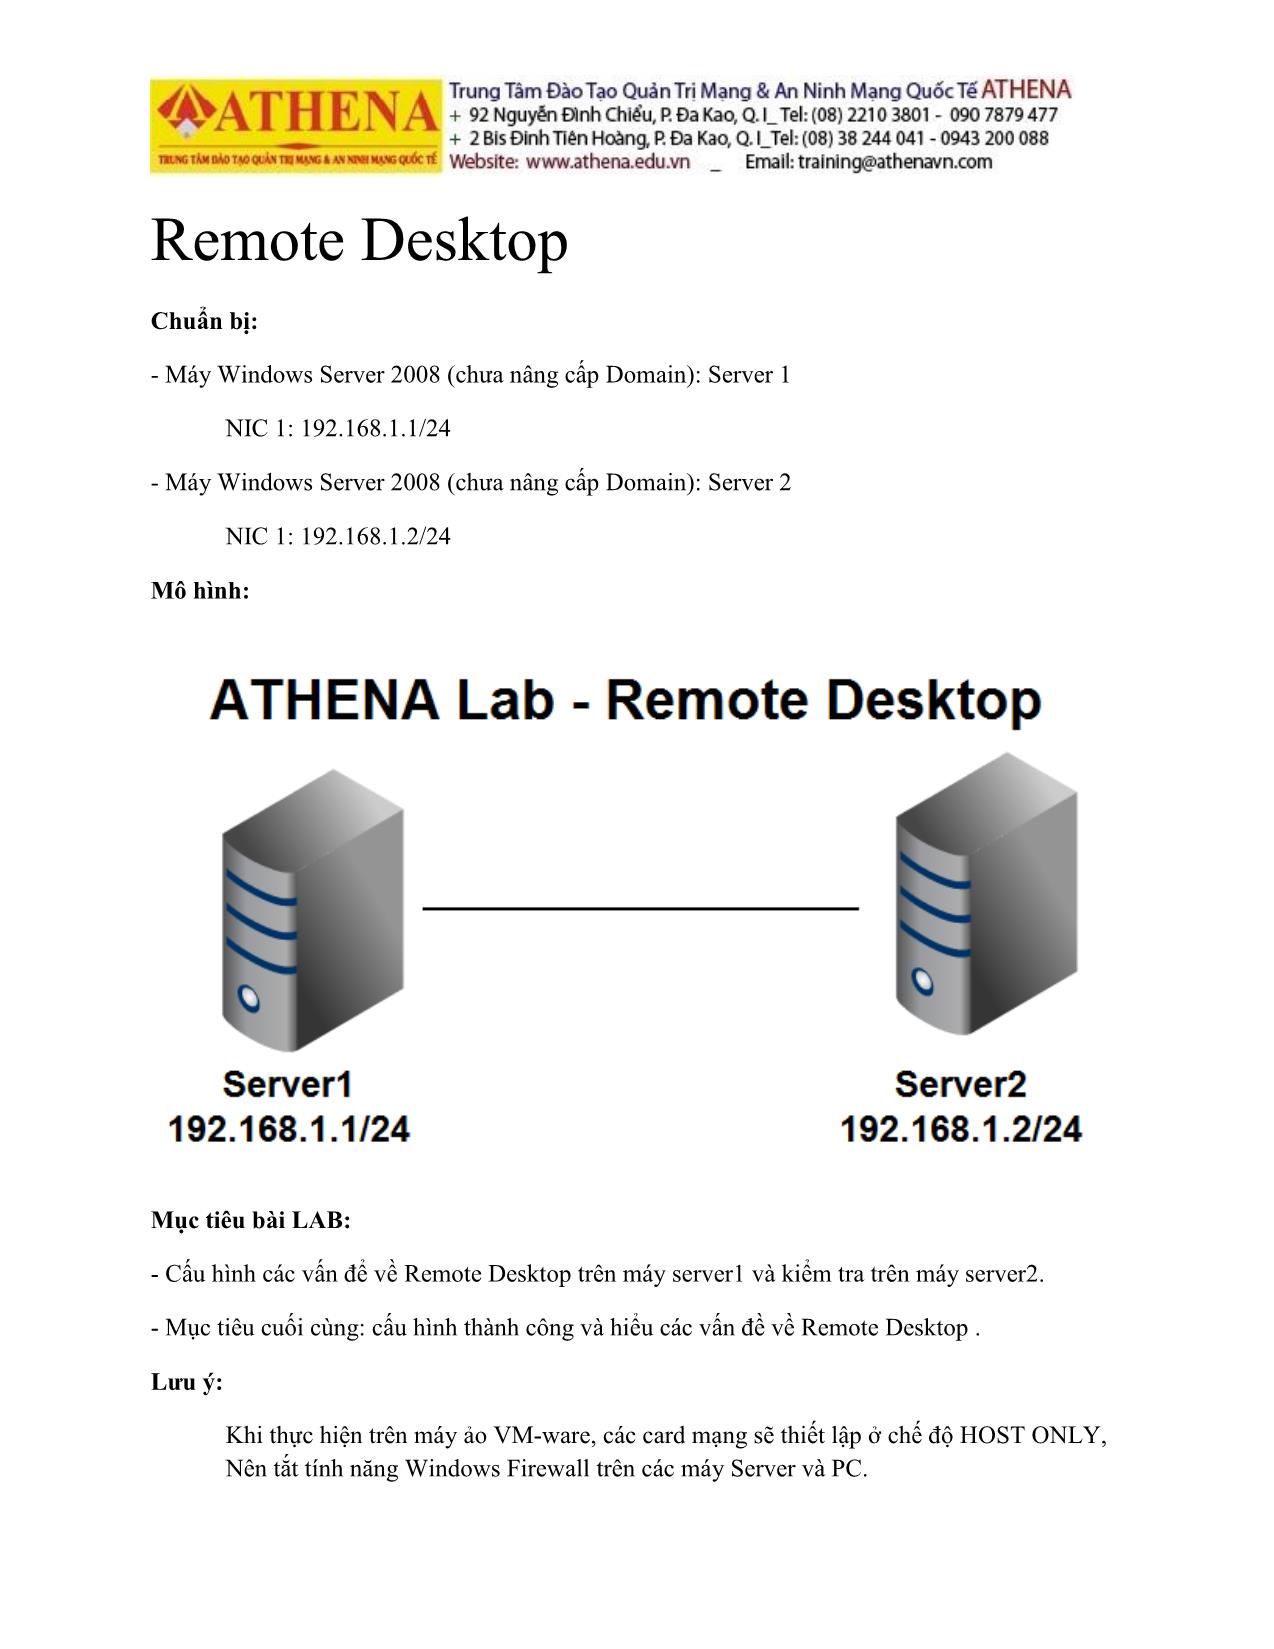 Tài liệu Hướng dẫn thực hành quản trị mạng - Remote desktop trang 1